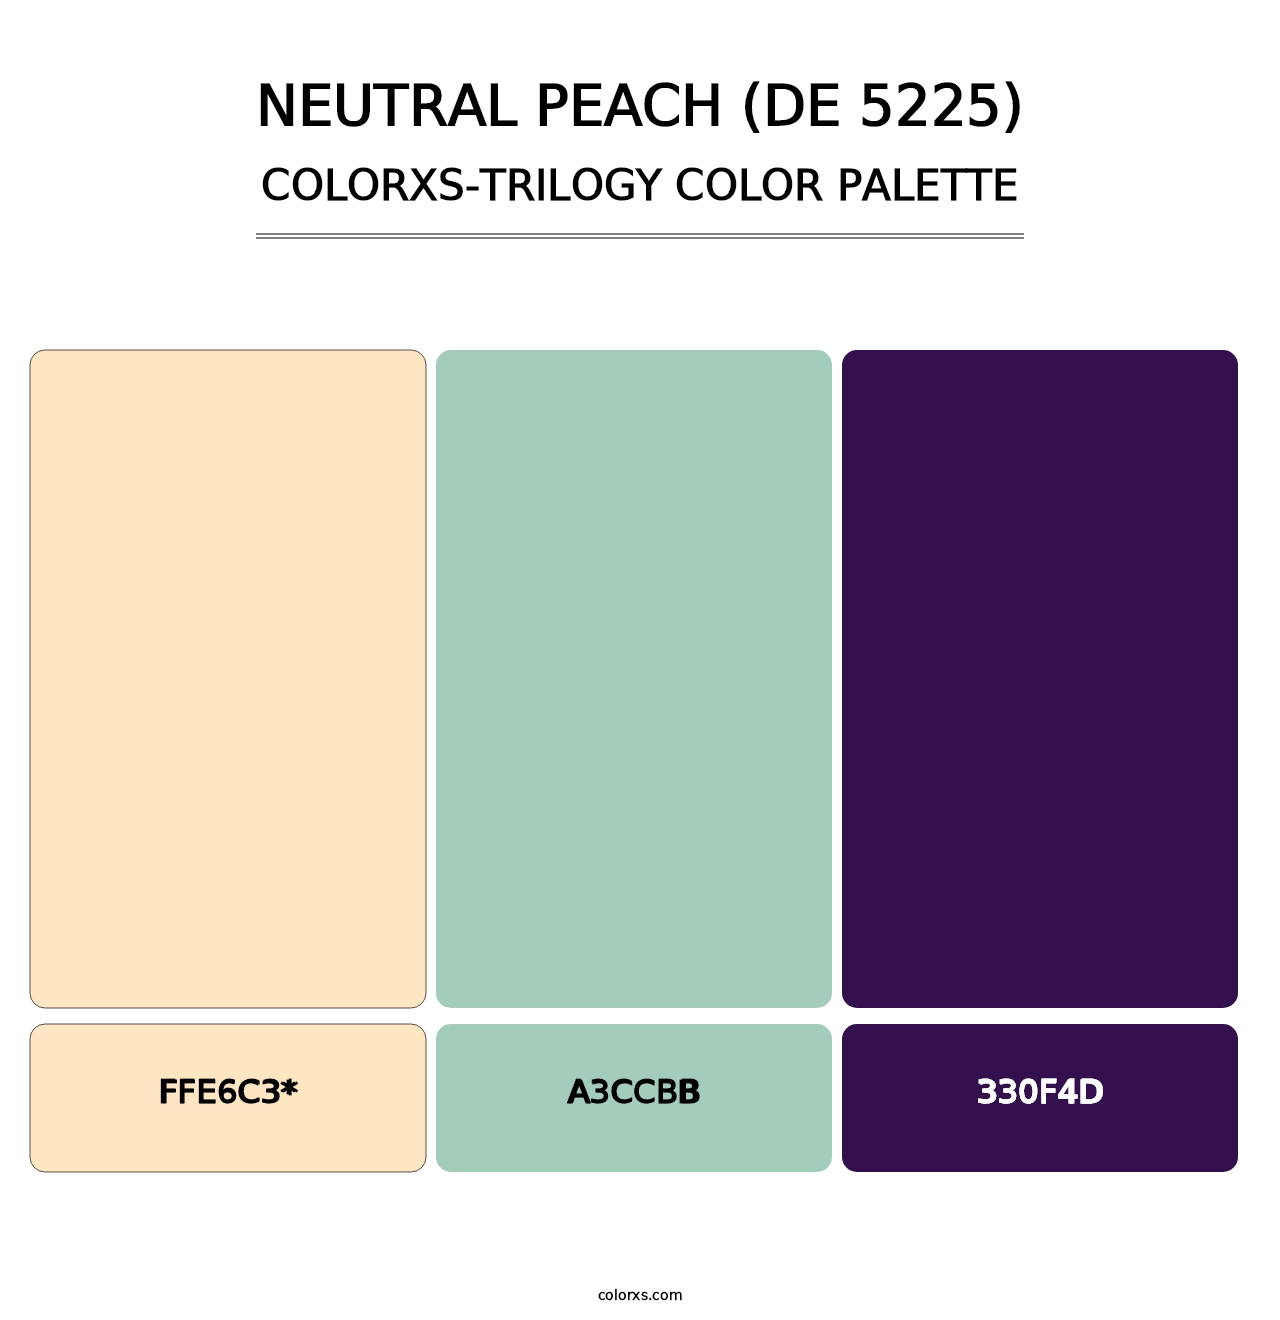 Neutral Peach (DE 5225) - Colorxs Trilogy Palette